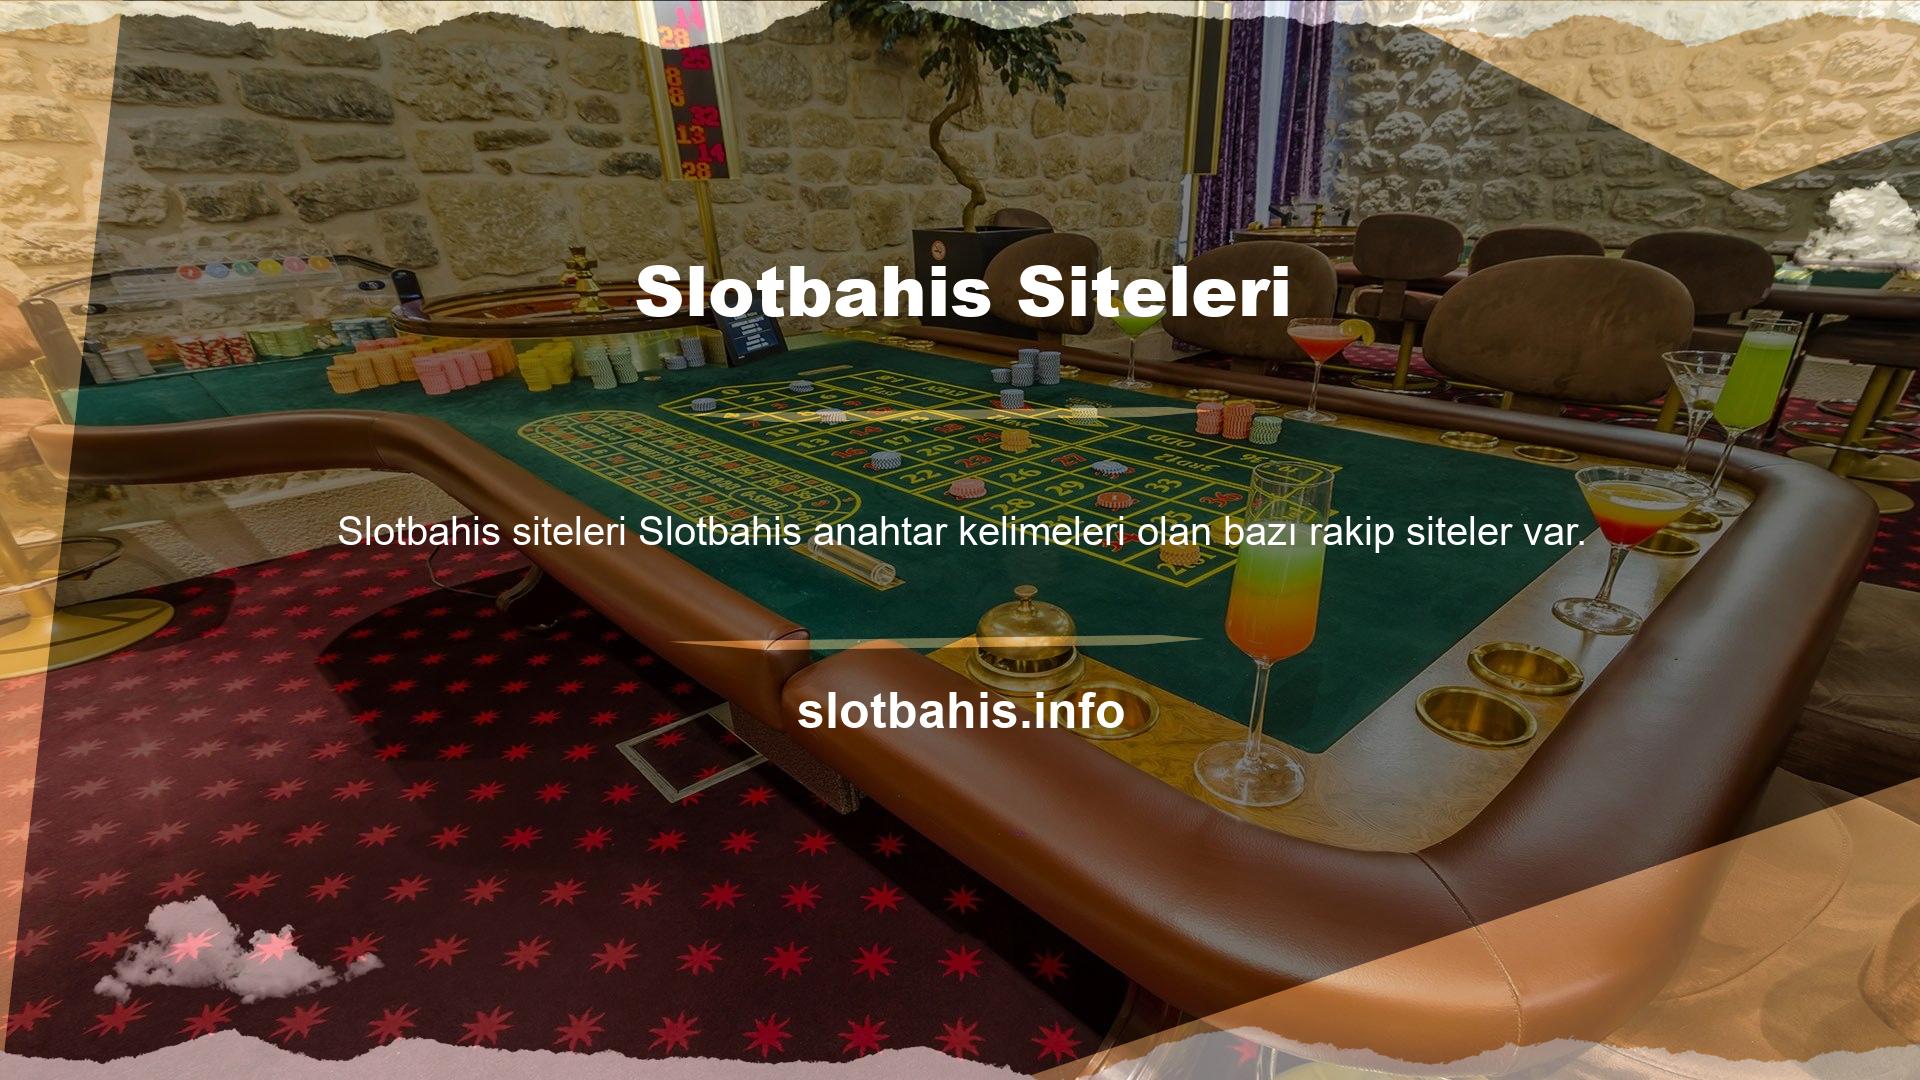 Bunlardan şu anda üç numara olan web sitem @Slotbahis